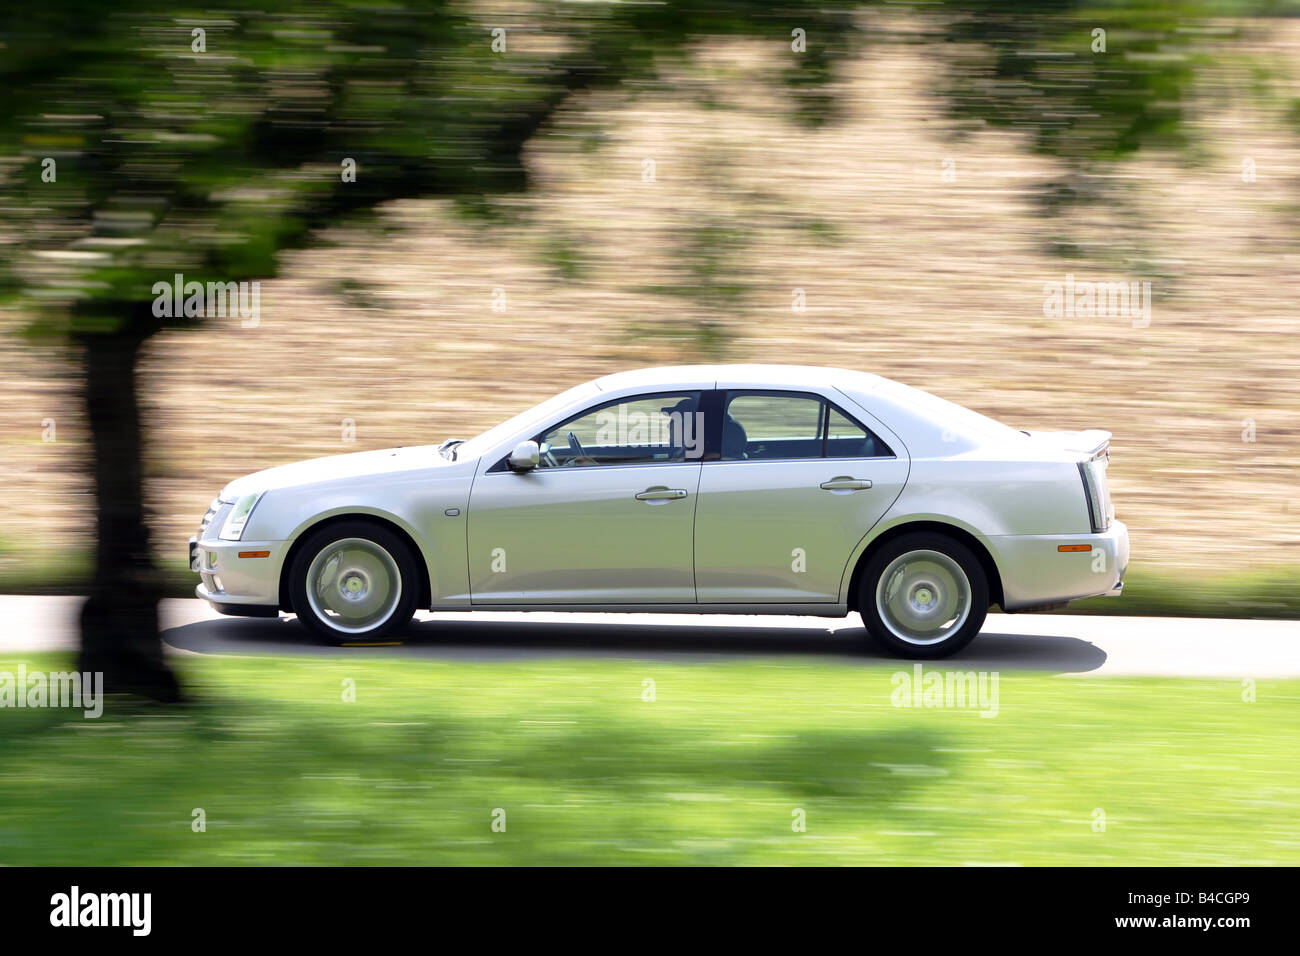 Cadillac STS 4.6 V8, l'année de modèle 2005, d'argent, la conduite, la vue latérale, country road Banque D'Images